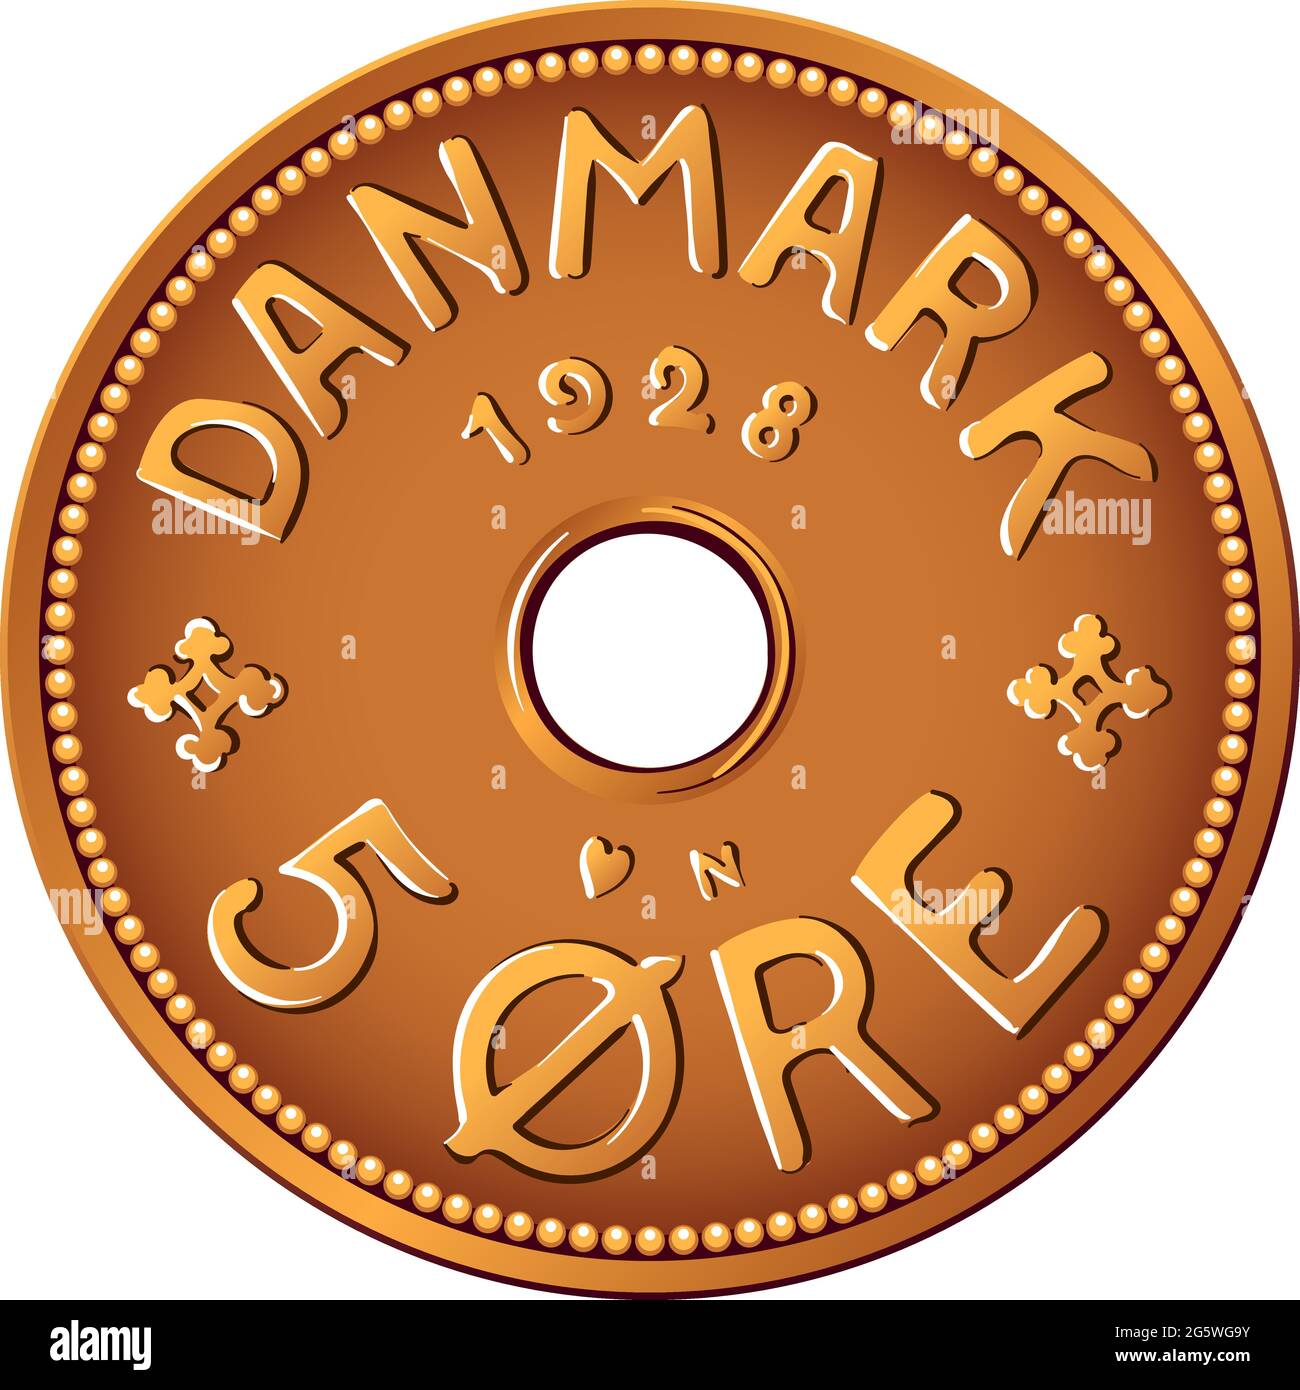 Ossverso di moneta danese stagno-bronzo 5 oro moneta. Krone, valuta ufficiale della Danimarca, della Groenlandia e delle Isole Faroe. Illustrazione Vettoriale